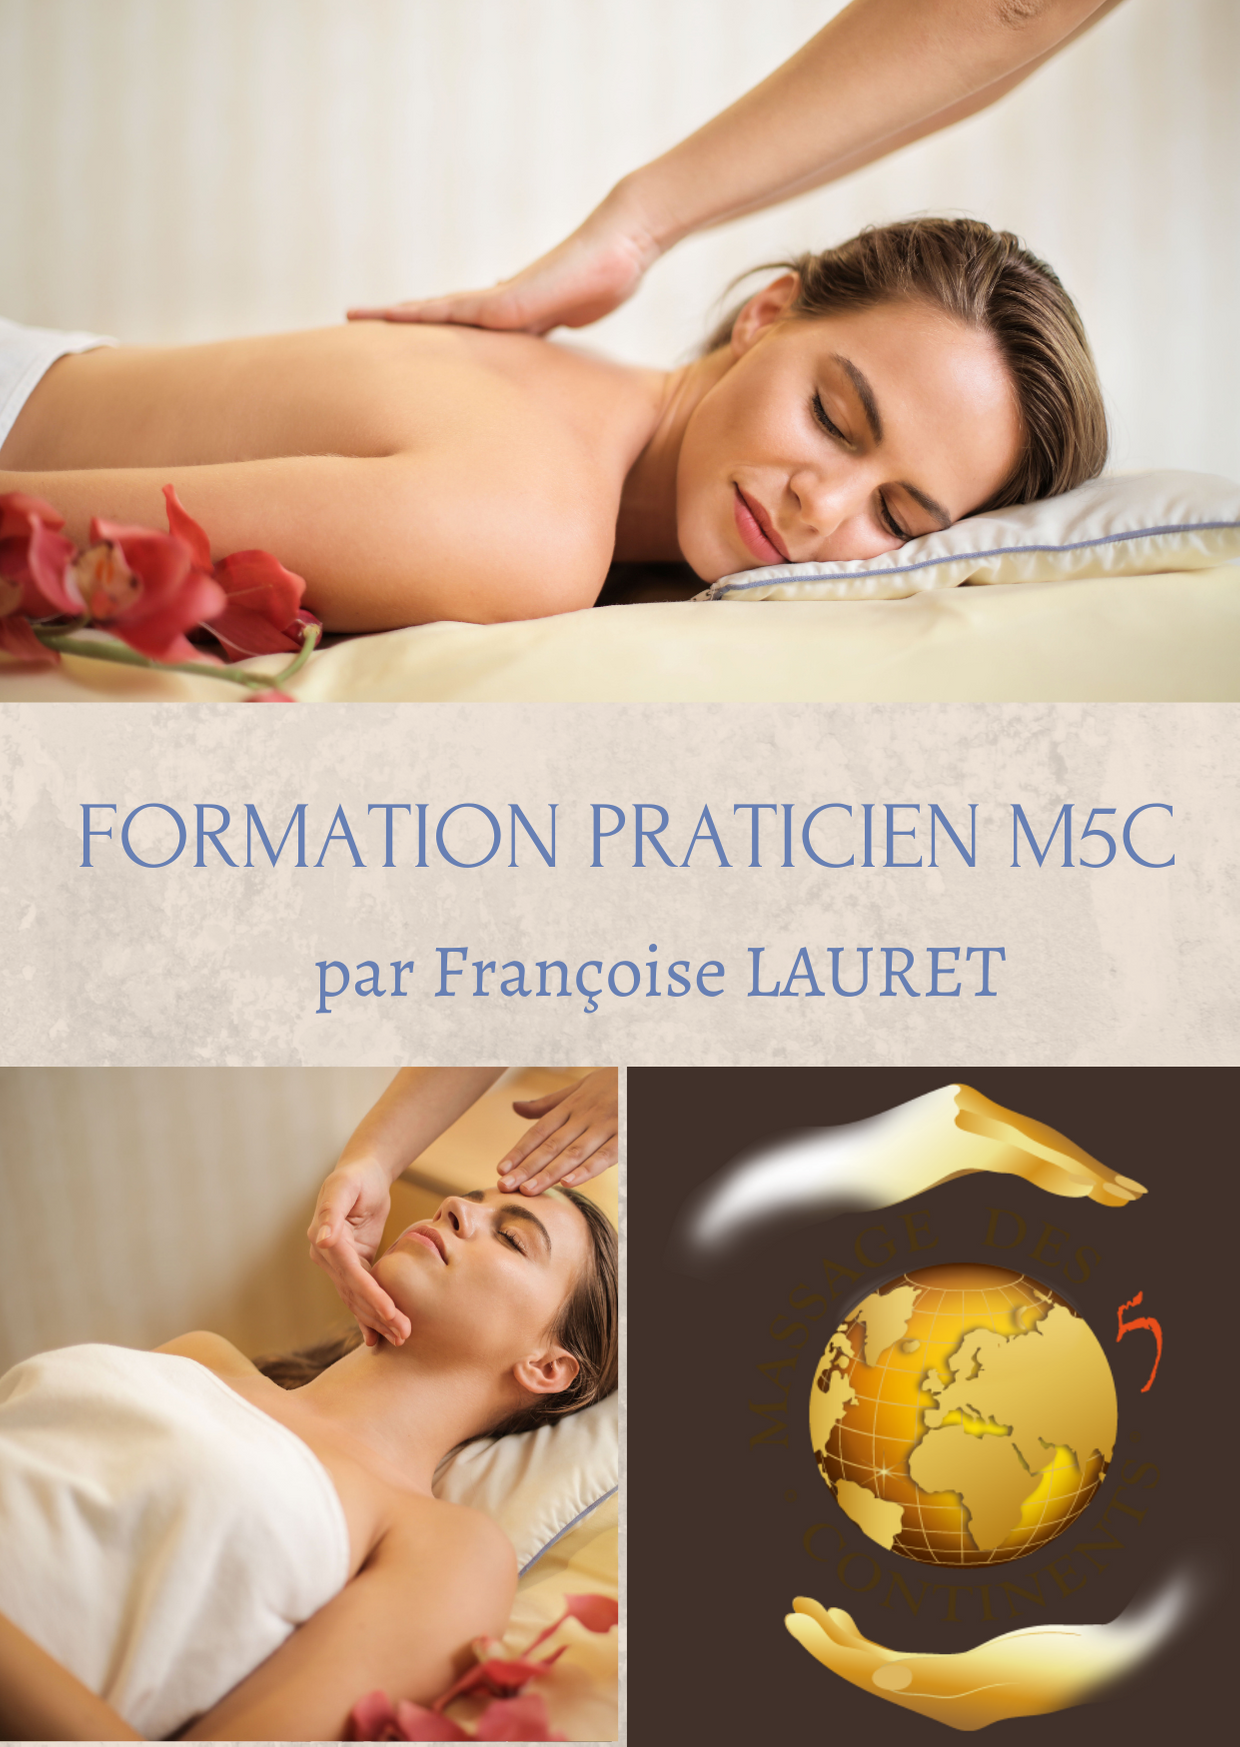 Formation praticien M5C par Franoise Lauret